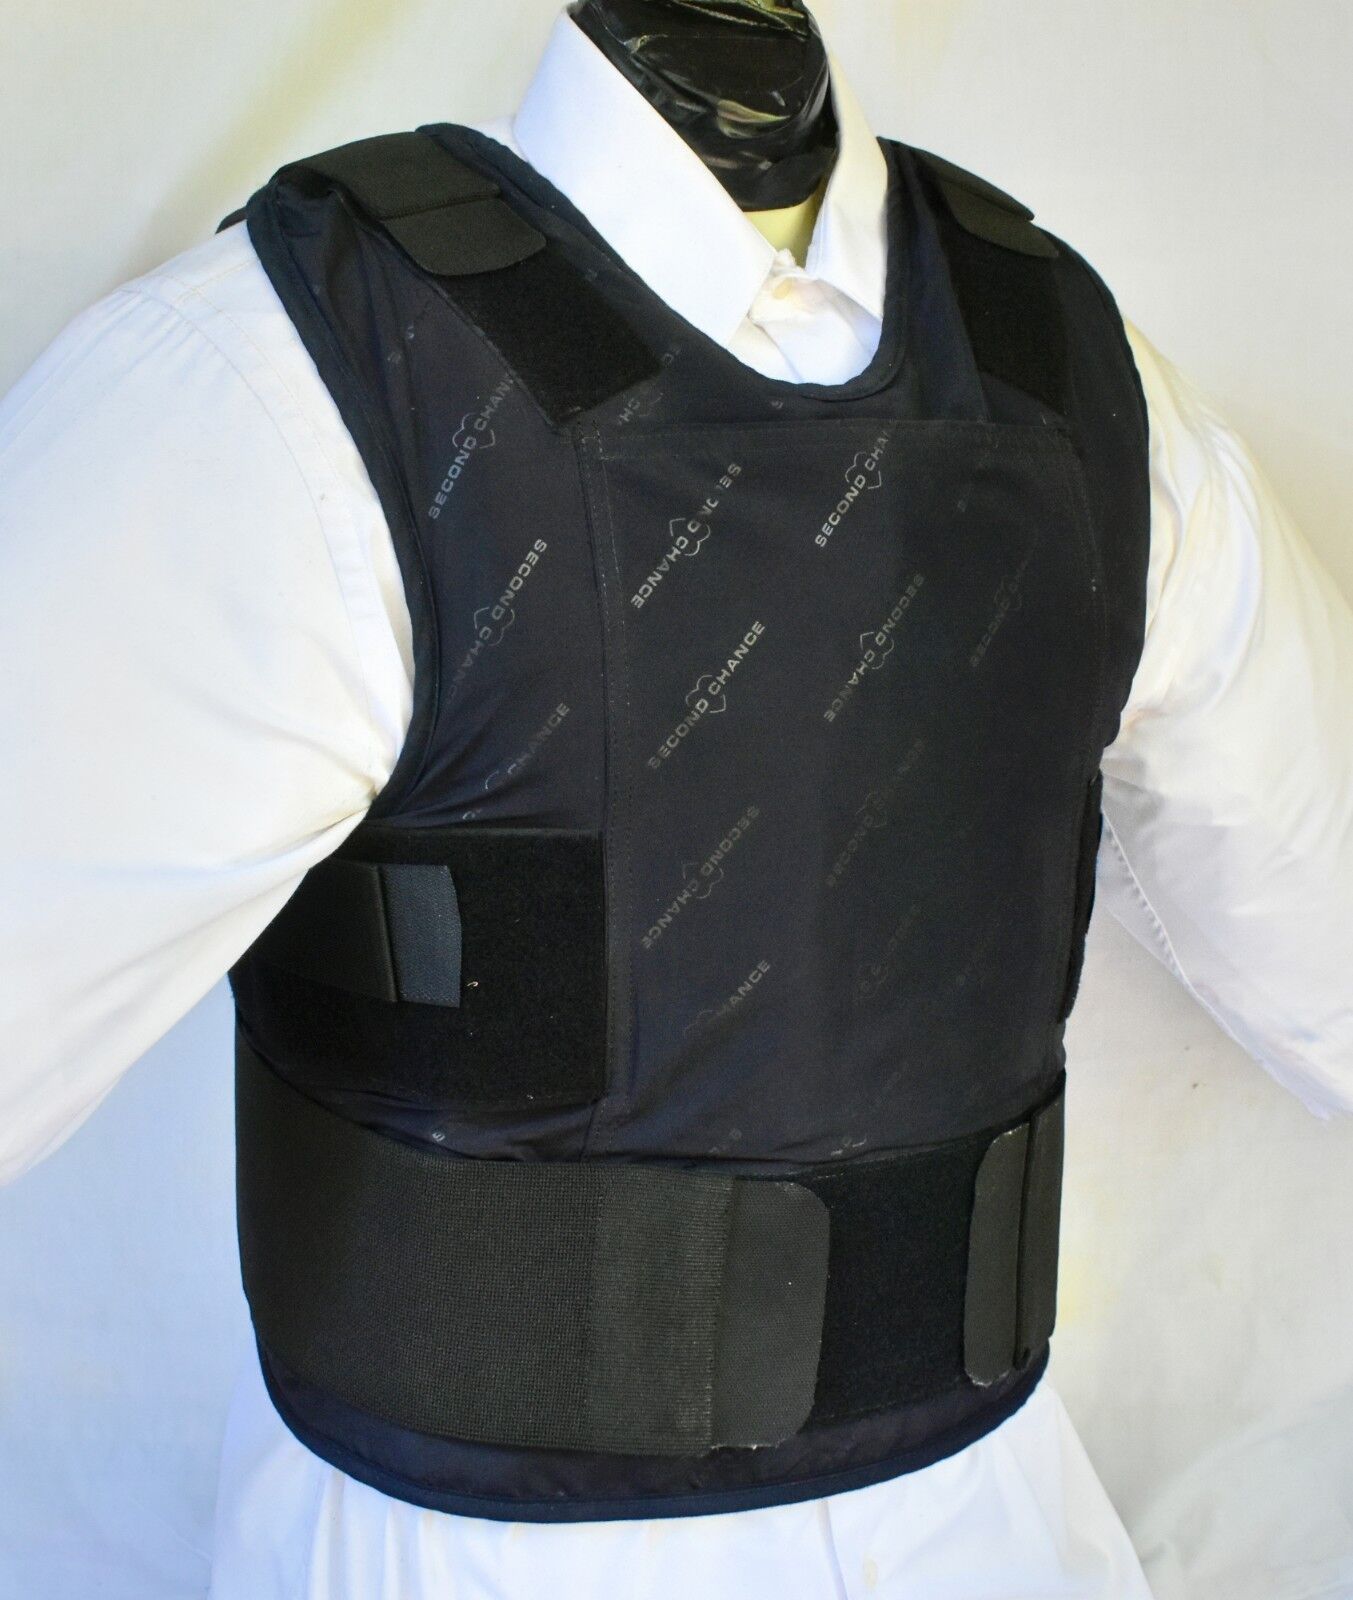 XXL IIIA Lo Vis / Concealable Body Armor Carrier BulletProof Vest